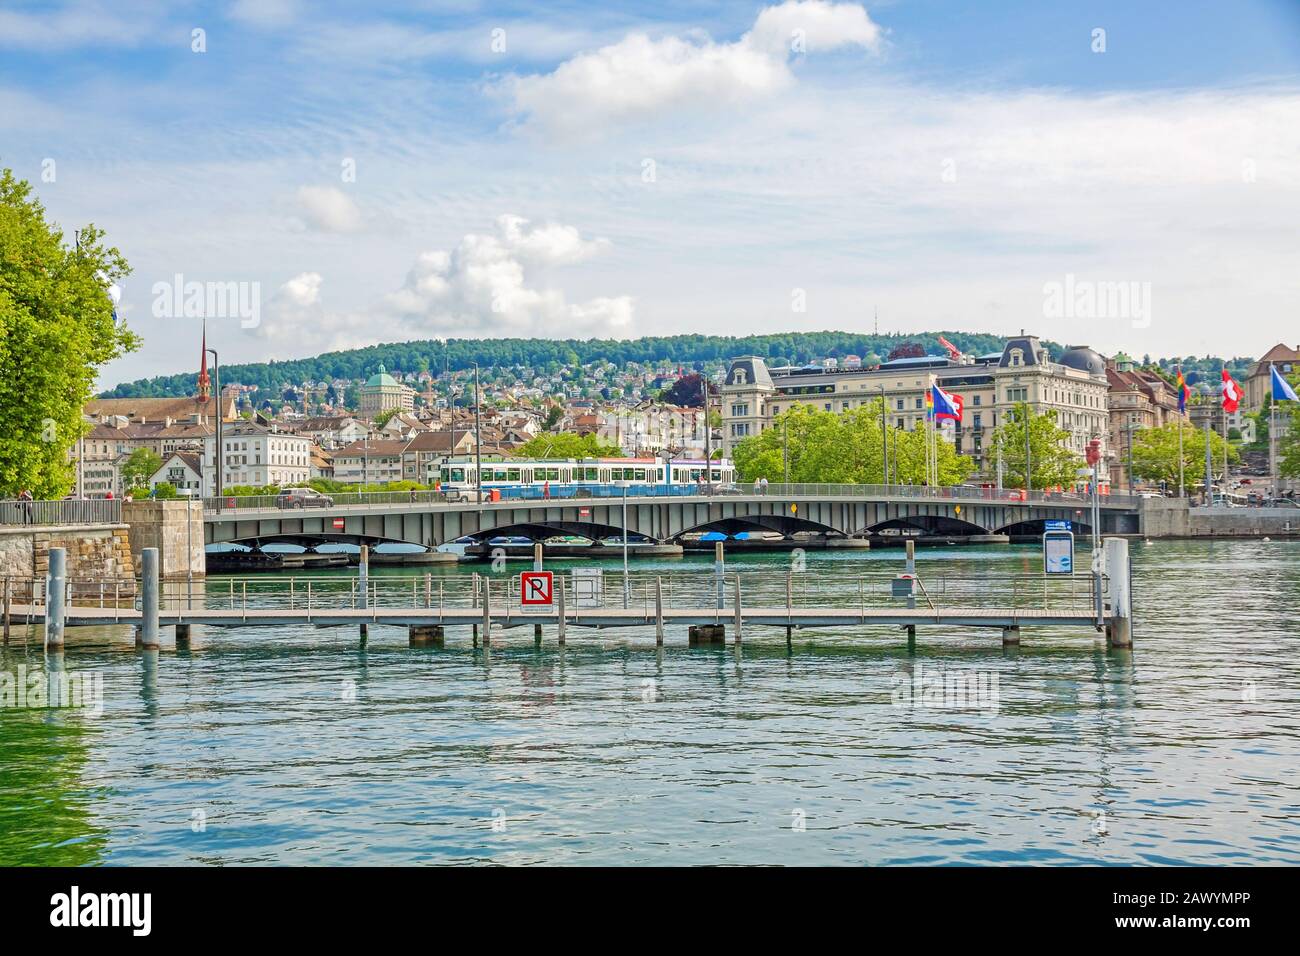 Zurigo, Svizzera - 10 giugno 2017: Ponte di Zurigo Quaibrucke con tram, fiume Limmat / Lago Zurichsee - vista da piazza Burkliterrasse verso il punto di partenza Foto Stock